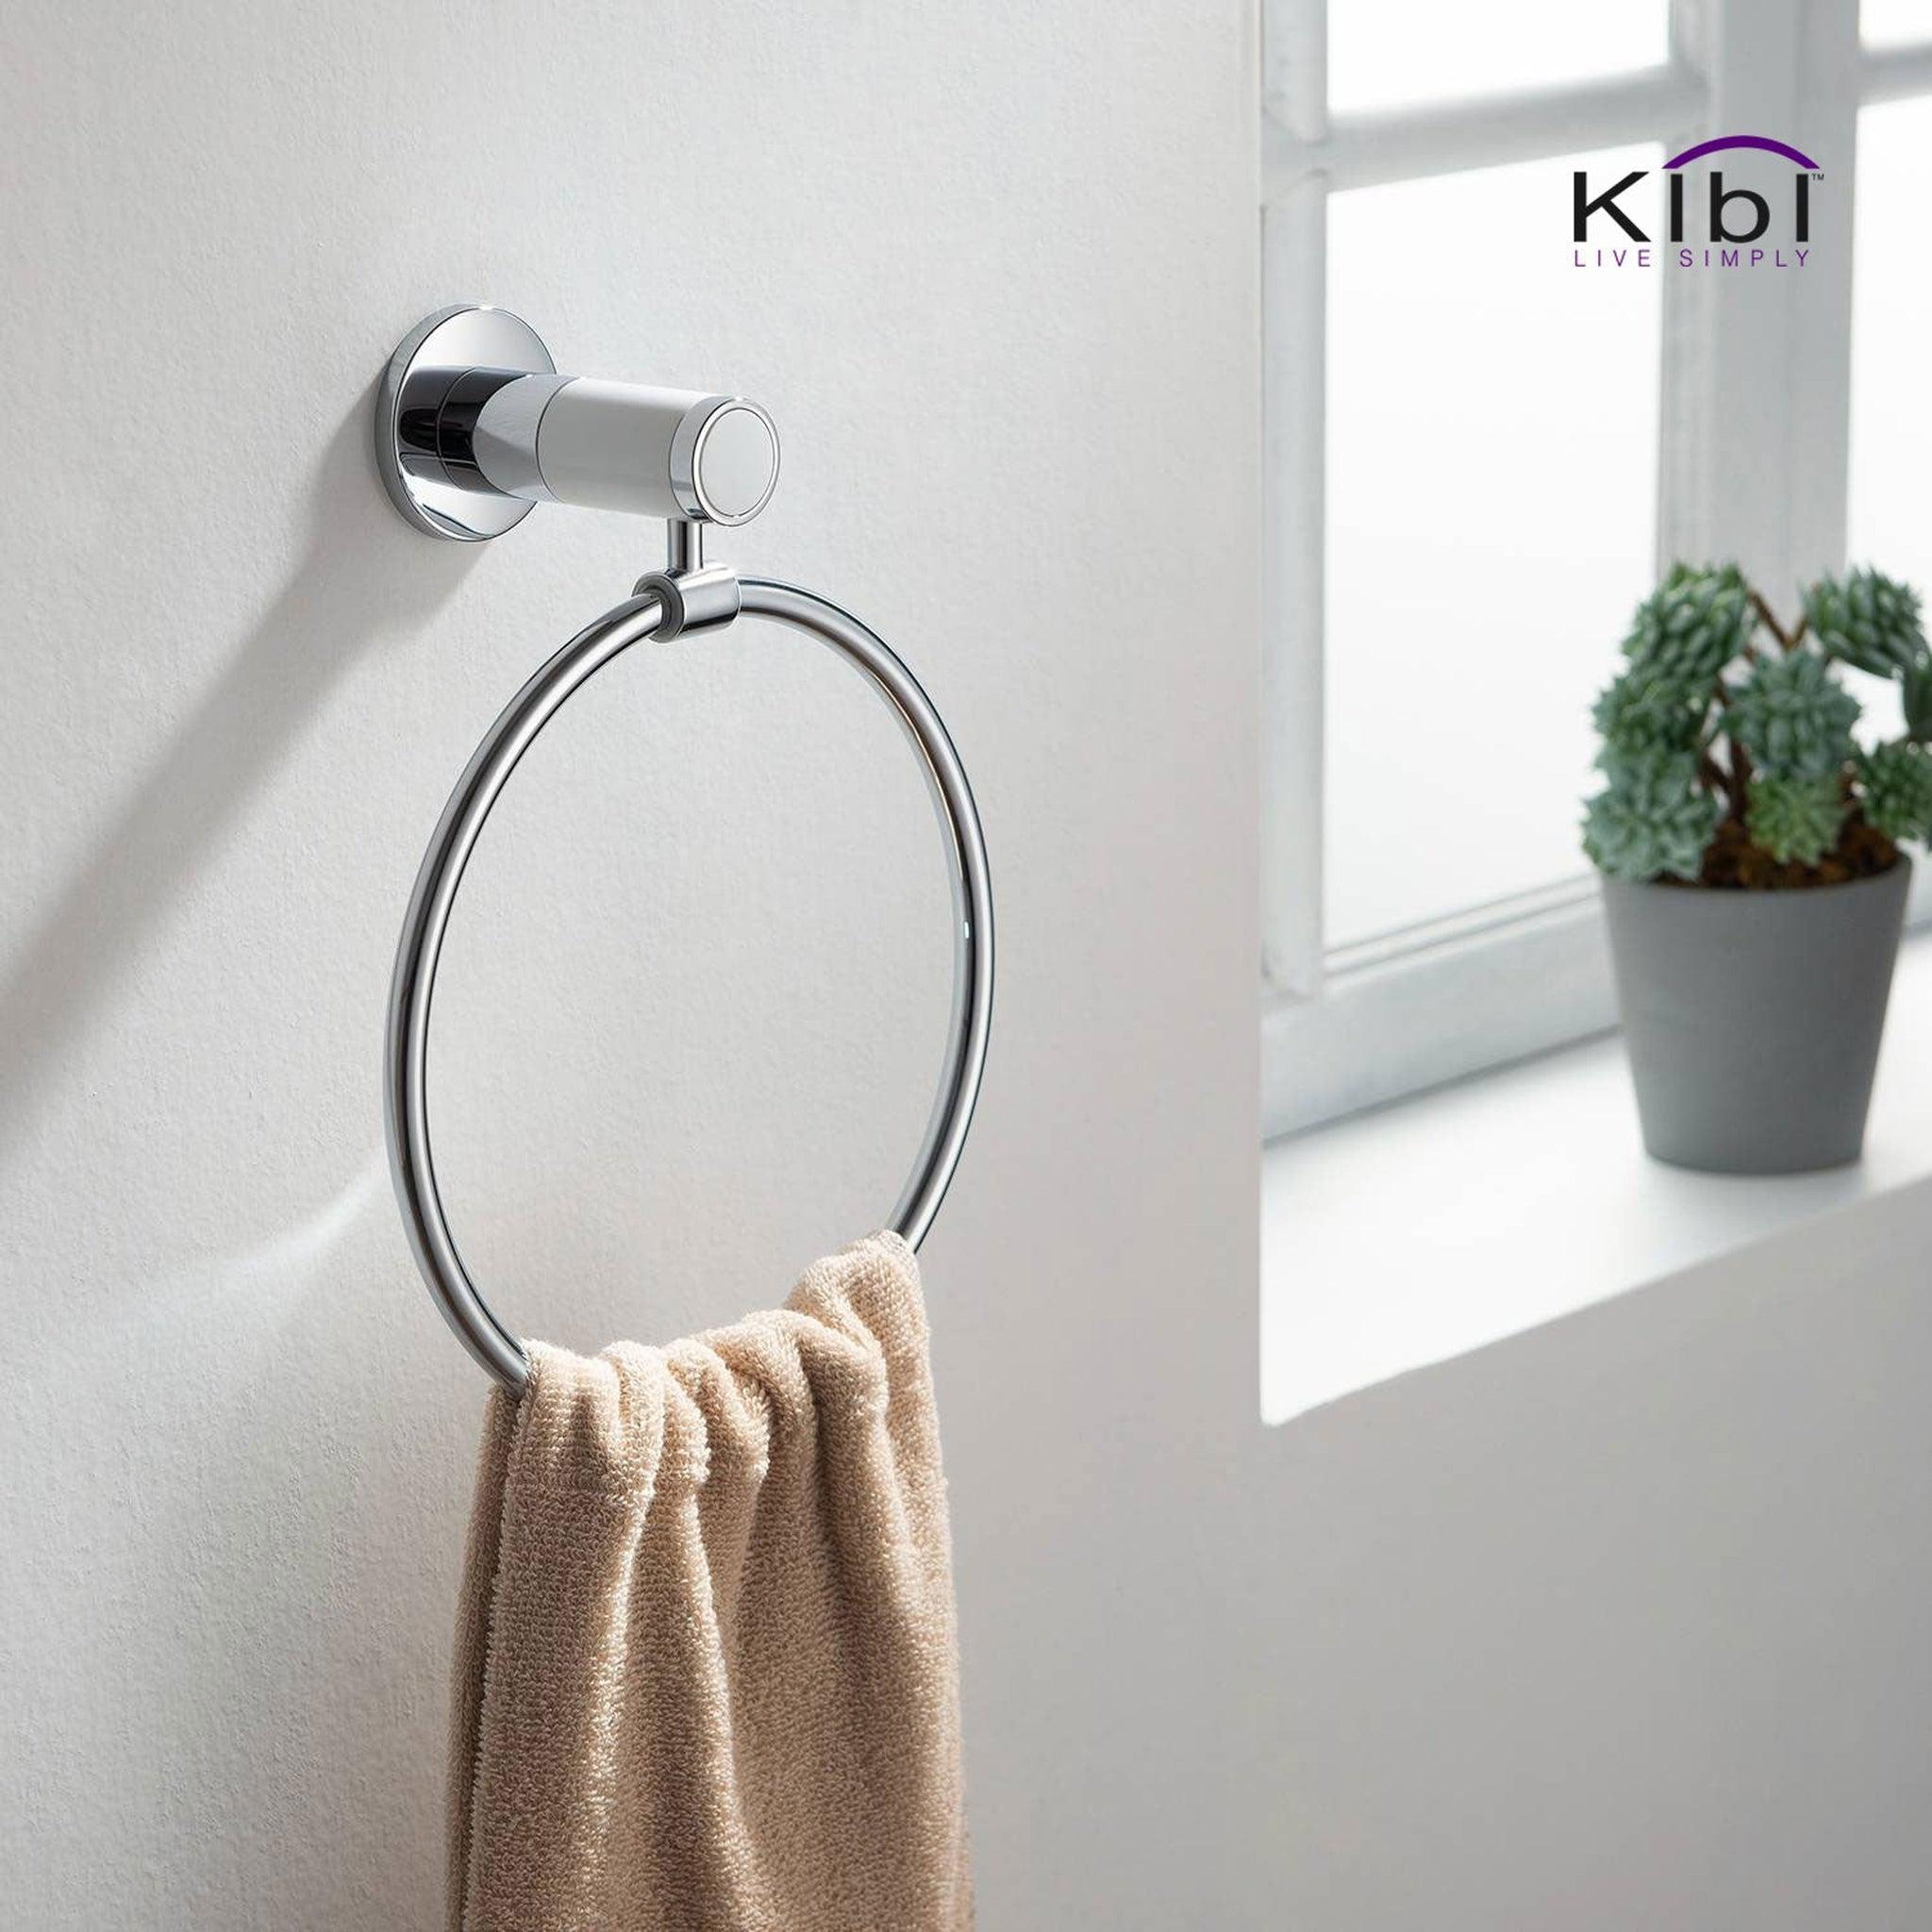 KIBI, KIBI Abaco Bathroom Towel Ring in Chrome White Finish